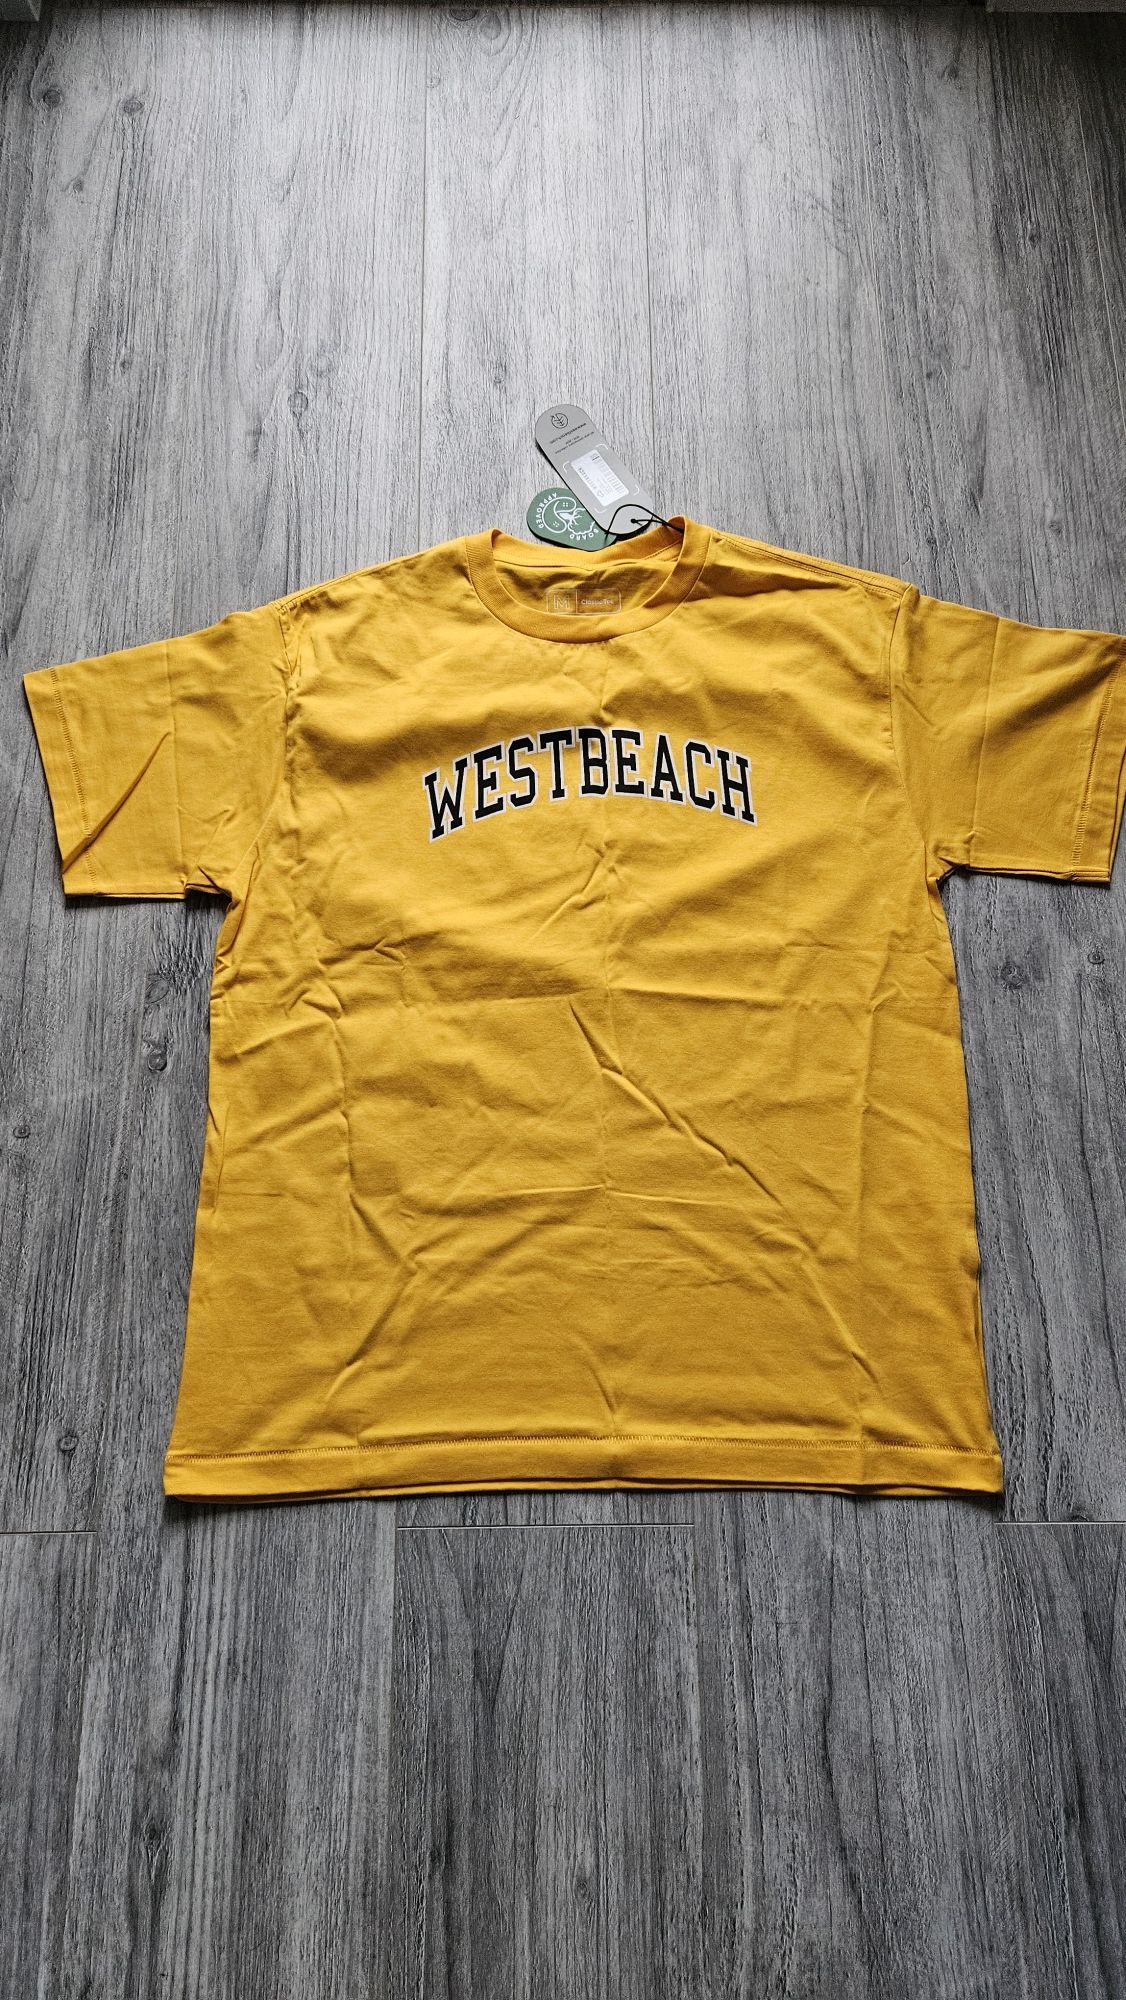 Nowa koszulka Westbeach , rozmiar M